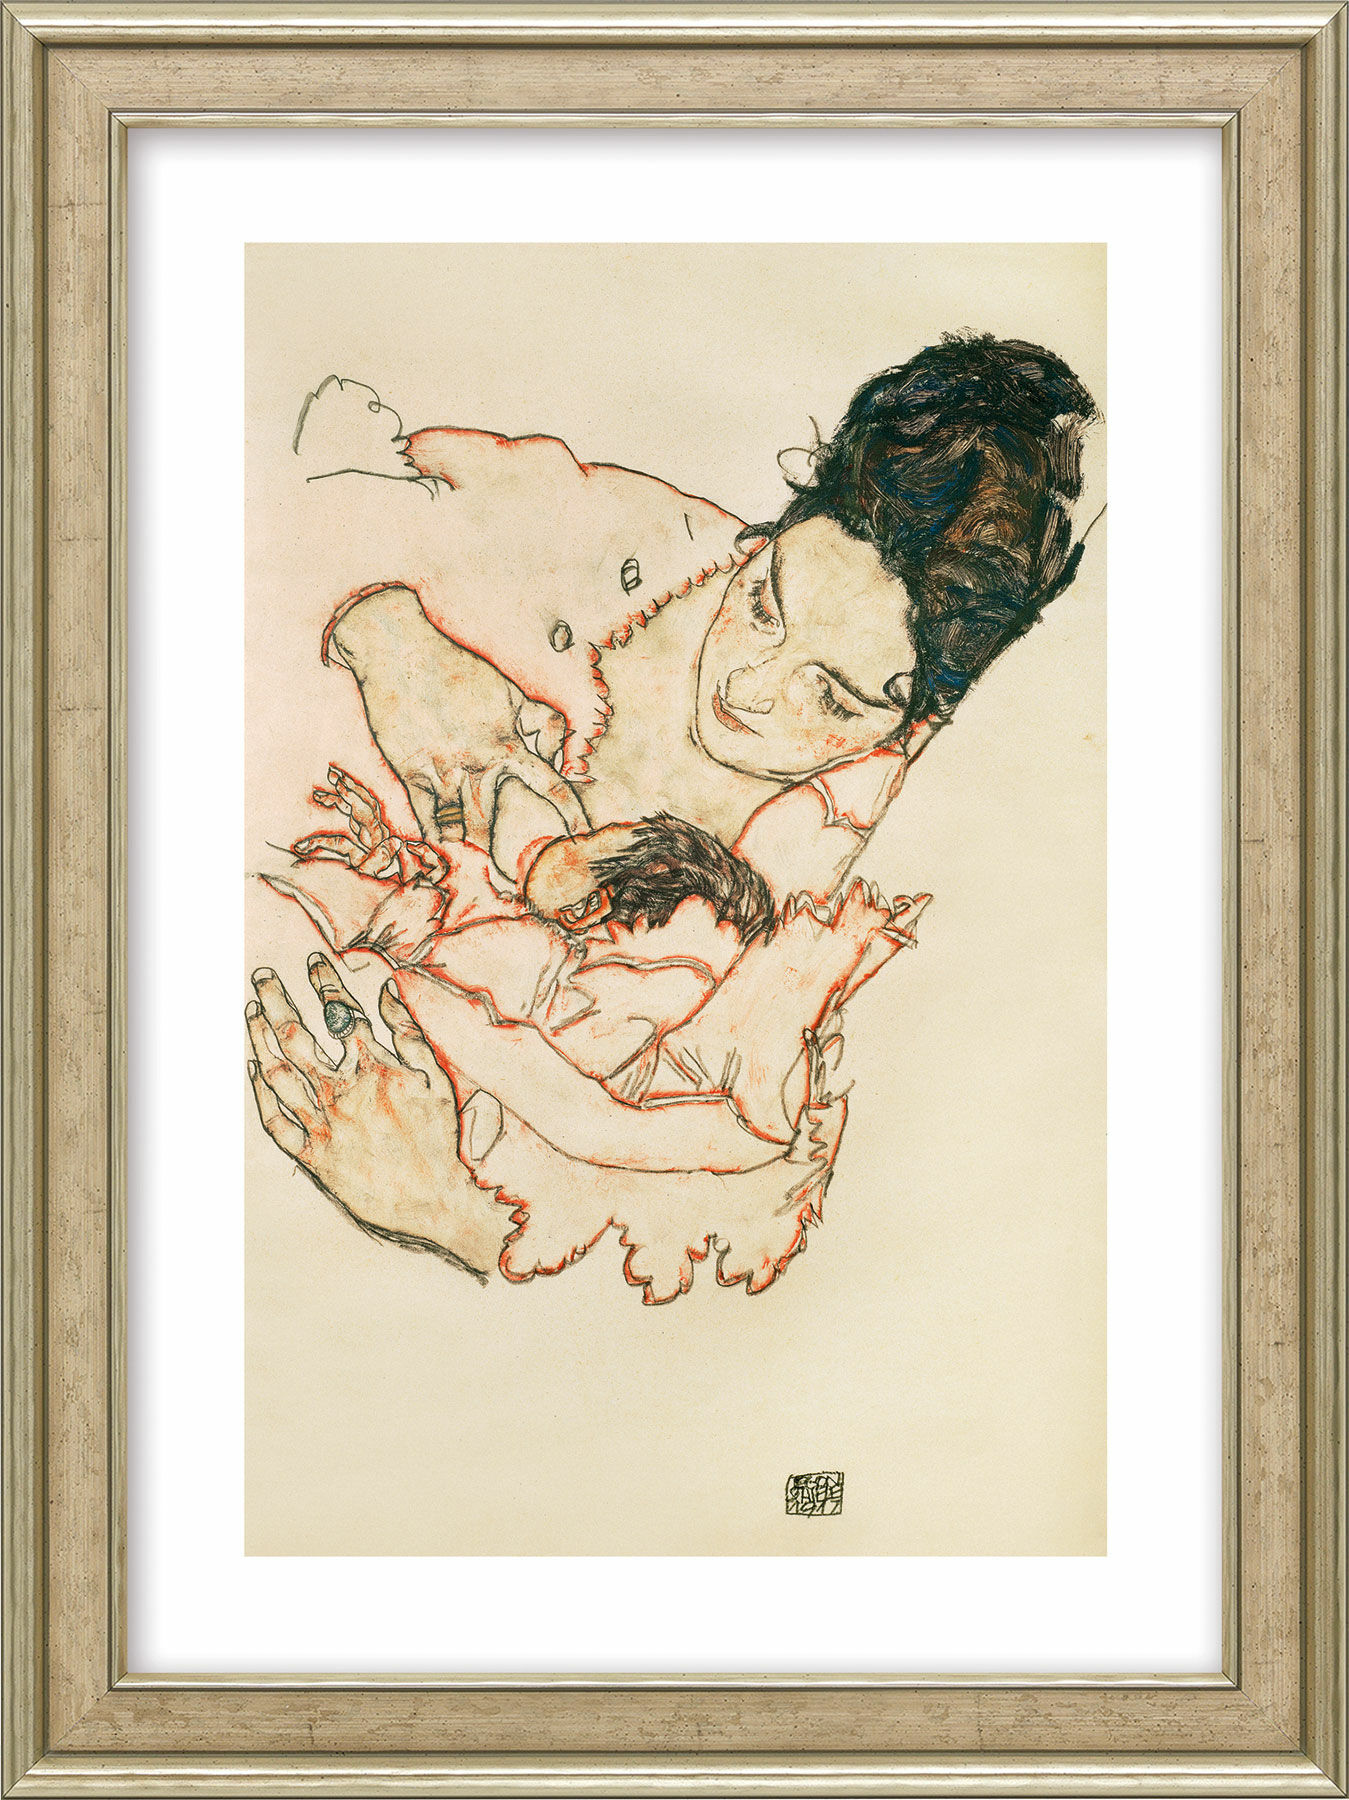 Tableau "Mère allaitante (Stephanie Grunewald)" (1917), encadré von Egon Schiele